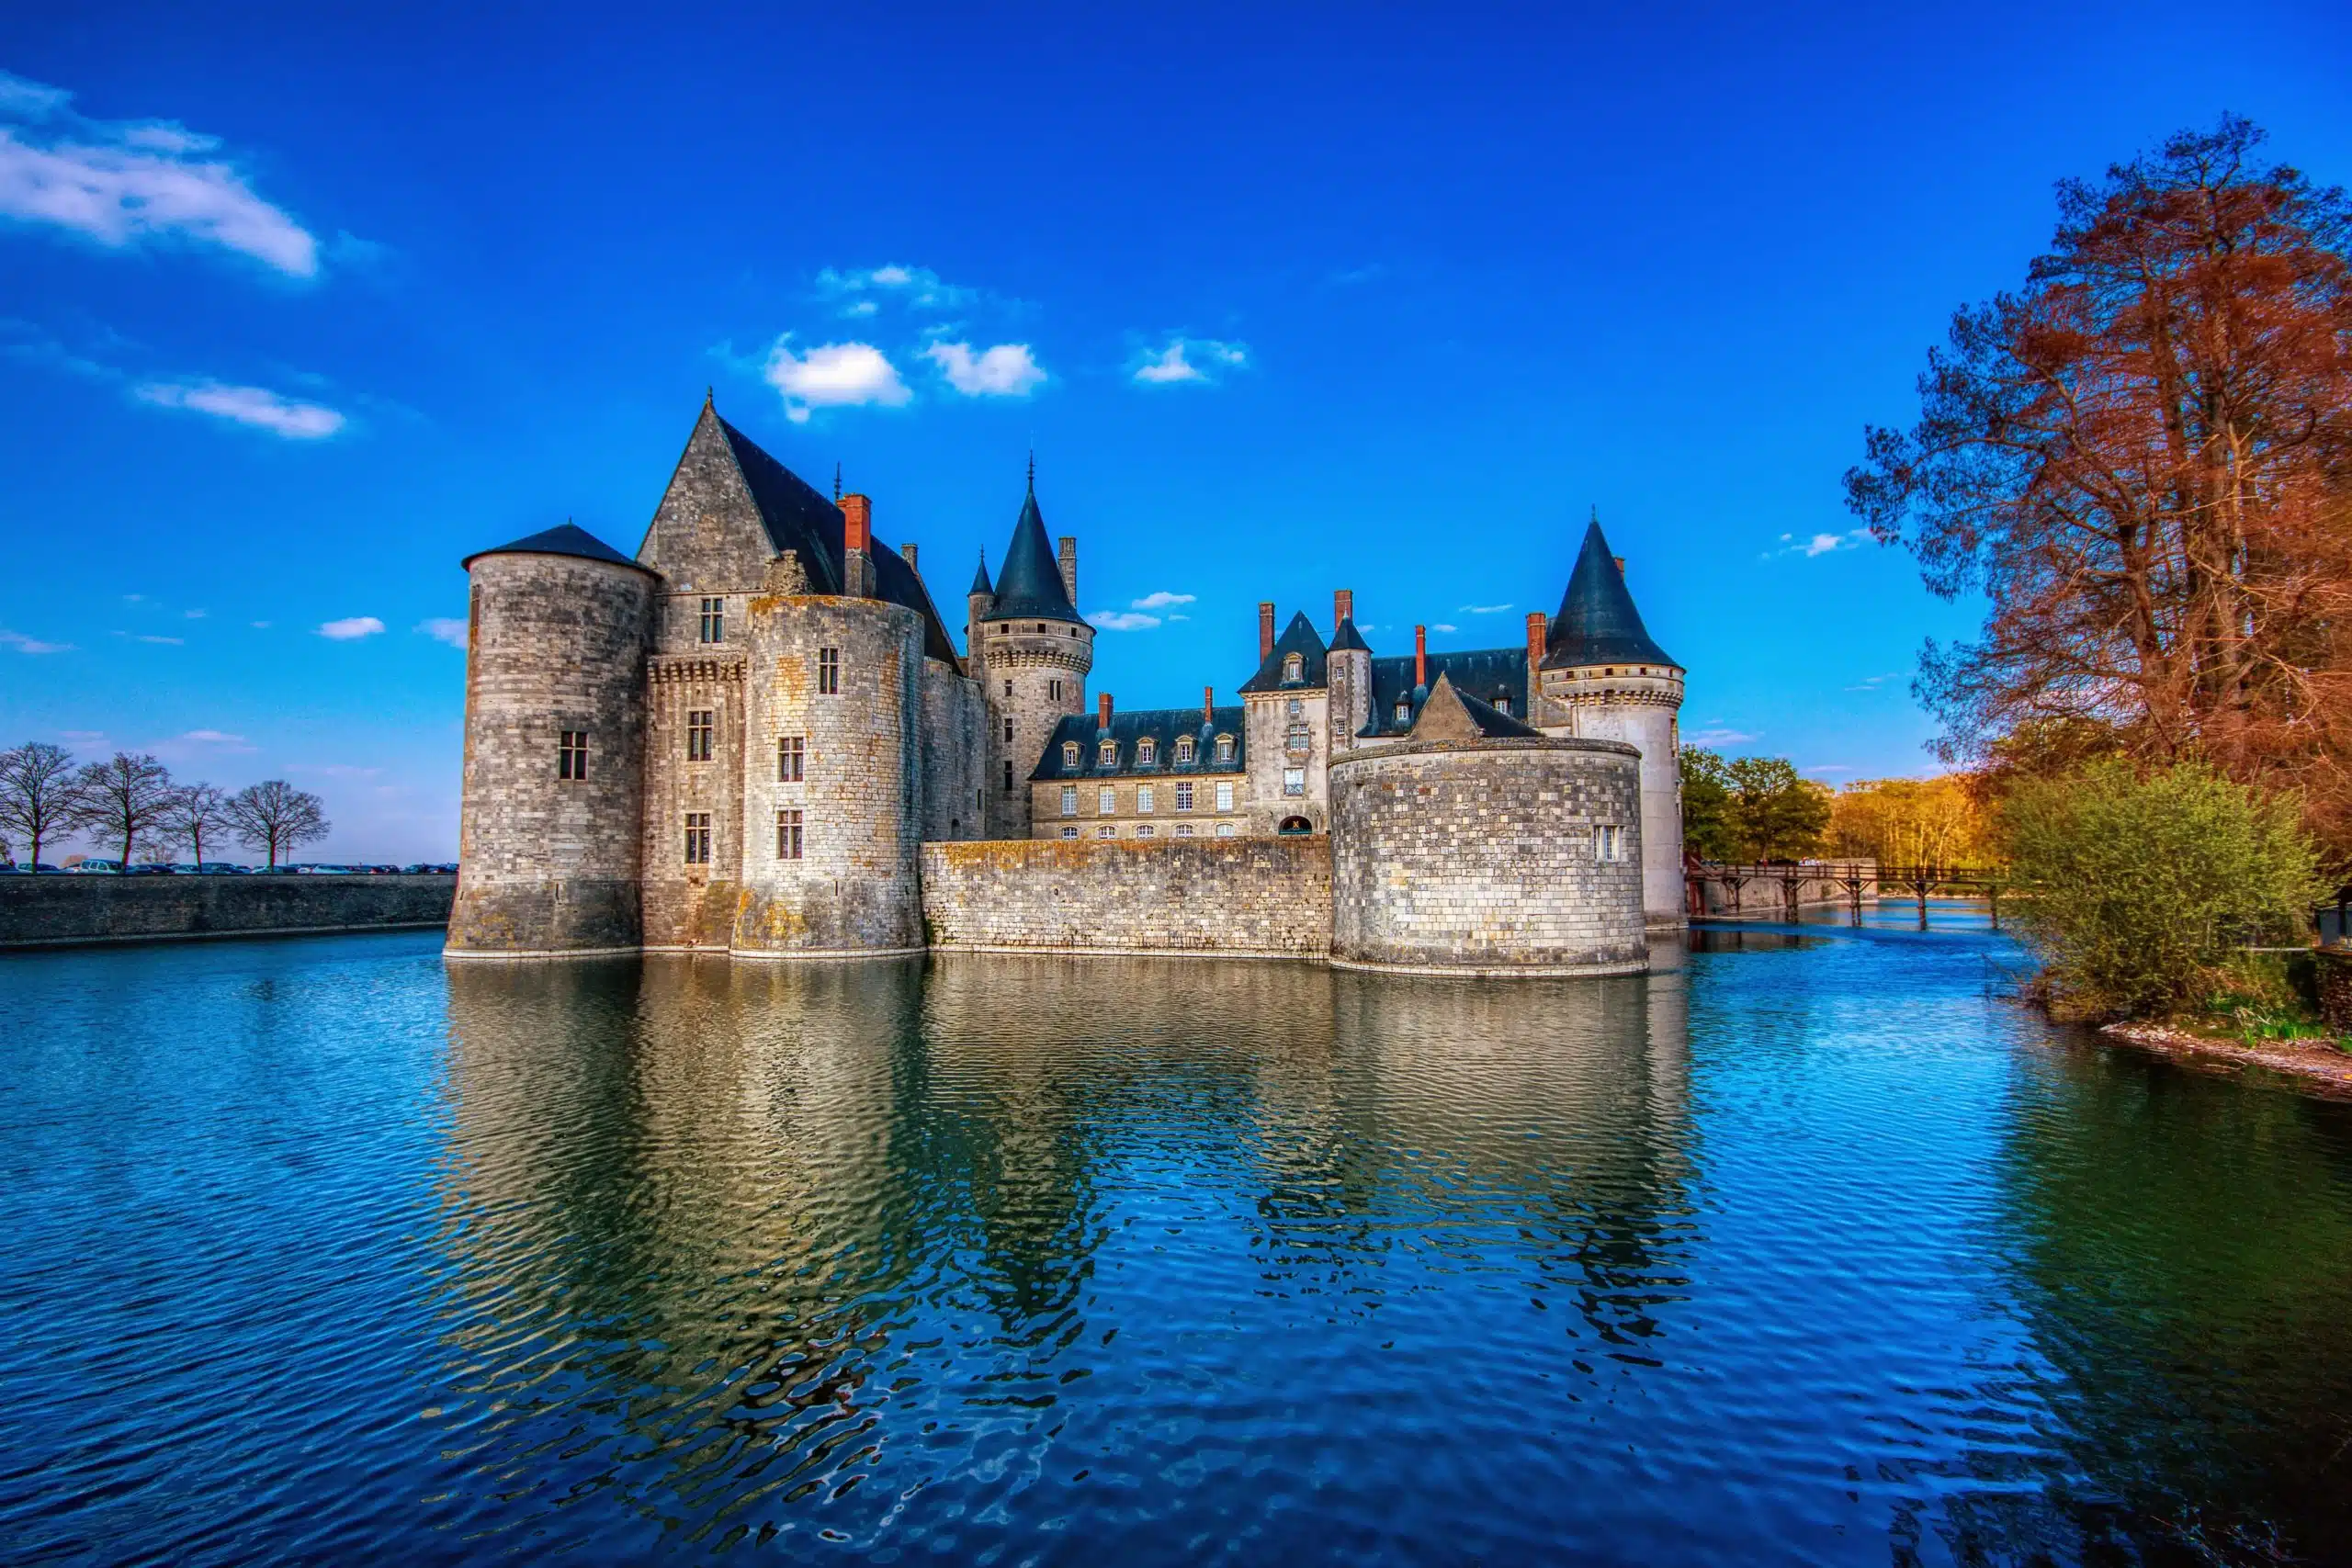 Famous medieval castle Sully sur Loire, Loire valley, France.